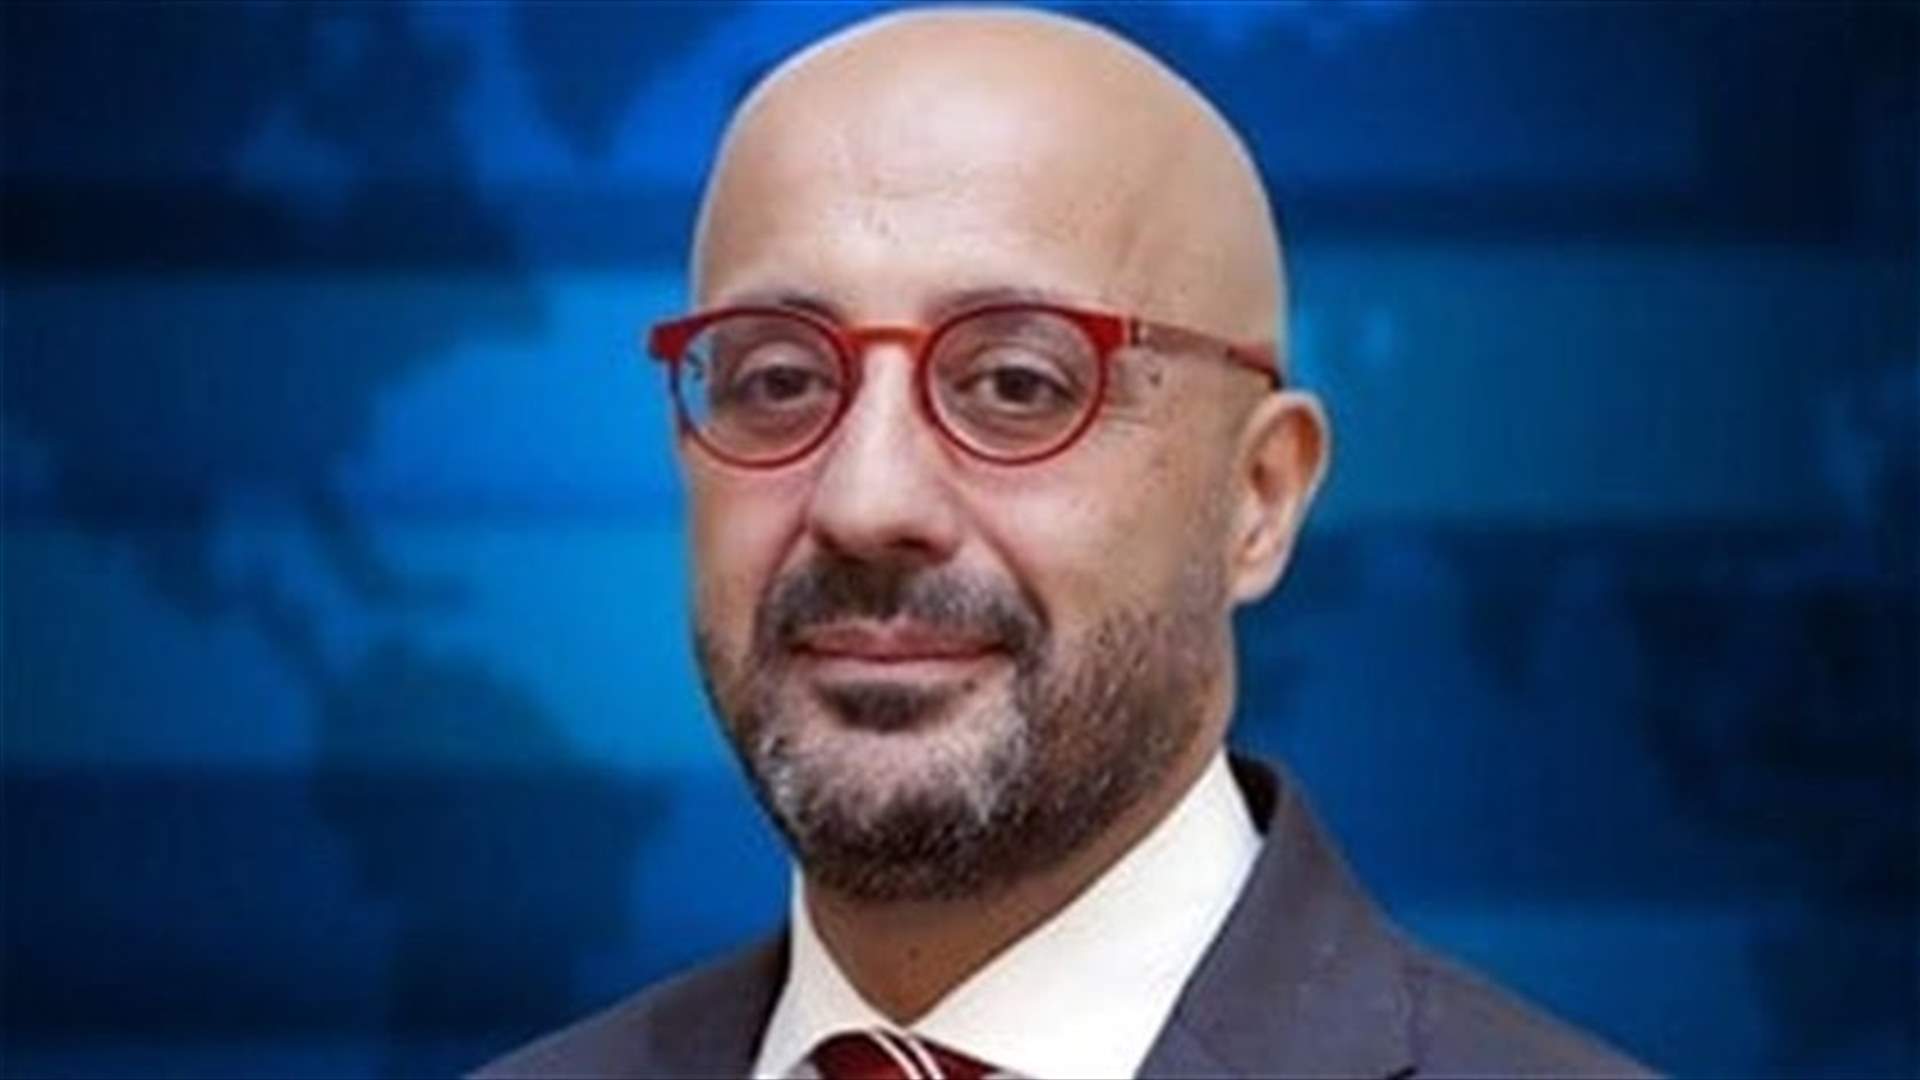 وزير البيئة يعلن عن 4 خطوات لمعالجة الردميات والحبوب وإخماد الحريق في مرفأ بيروت